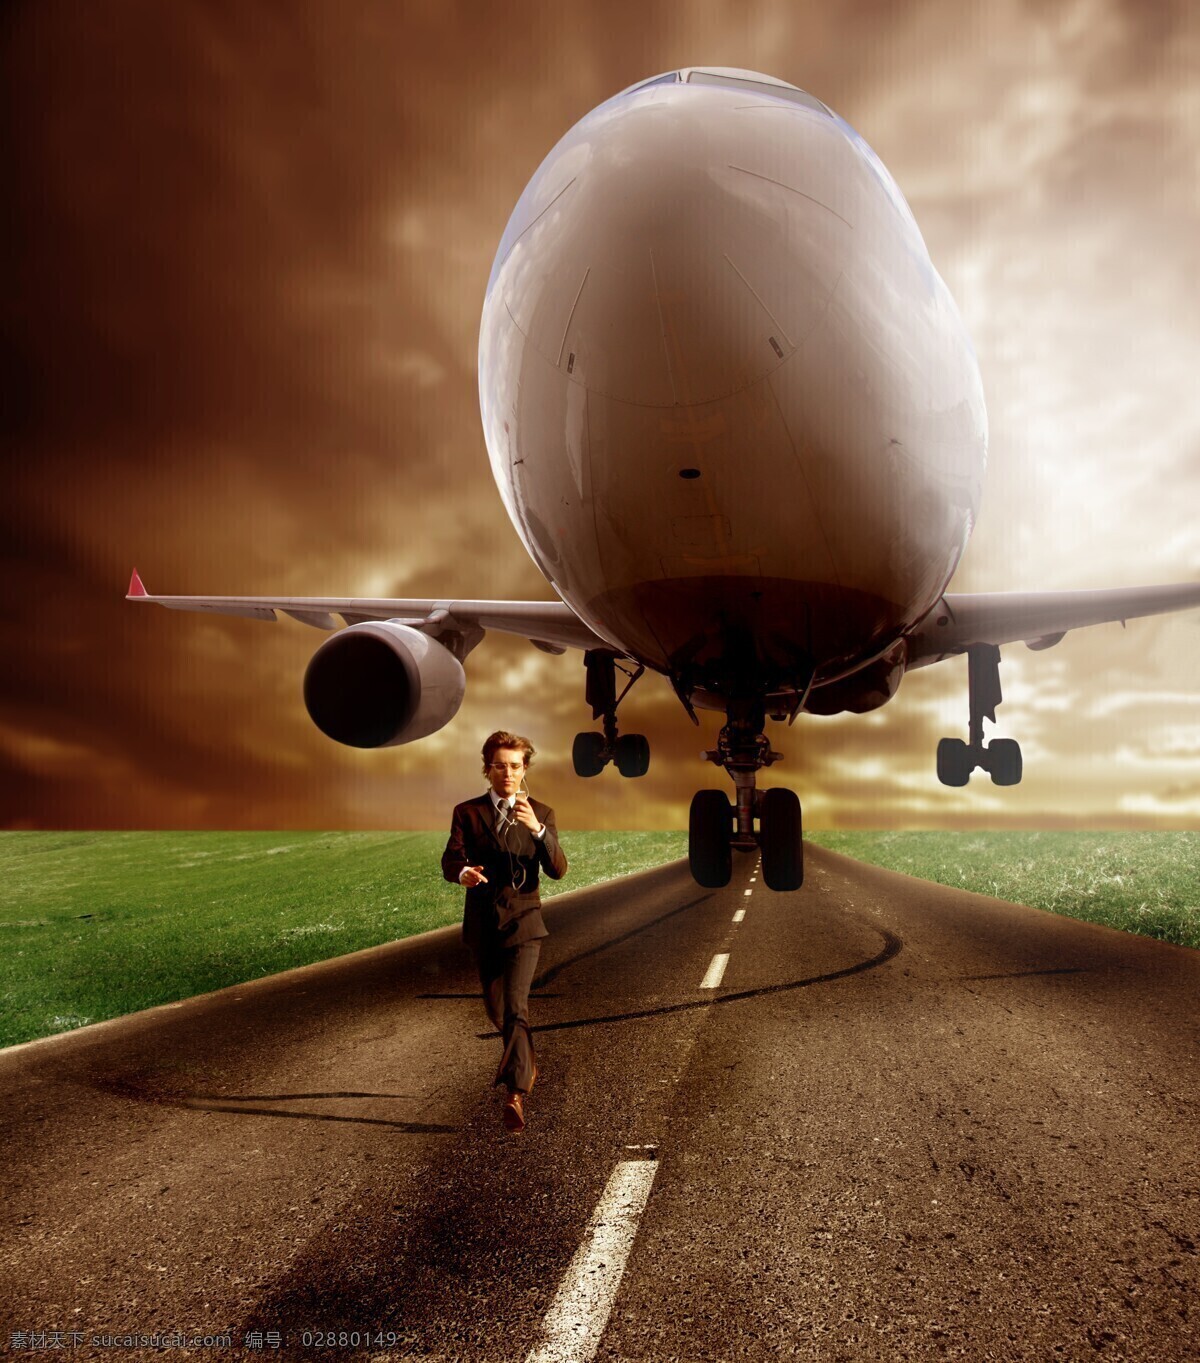 飞机 跑步 男人 旅行 旅游 起飞 客机 职业人物 商务男士 其他类别 生活百科